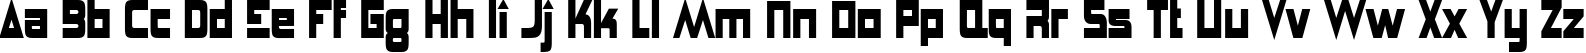 Пример написания английского алфавита шрифтом Anglepoise Lampshade